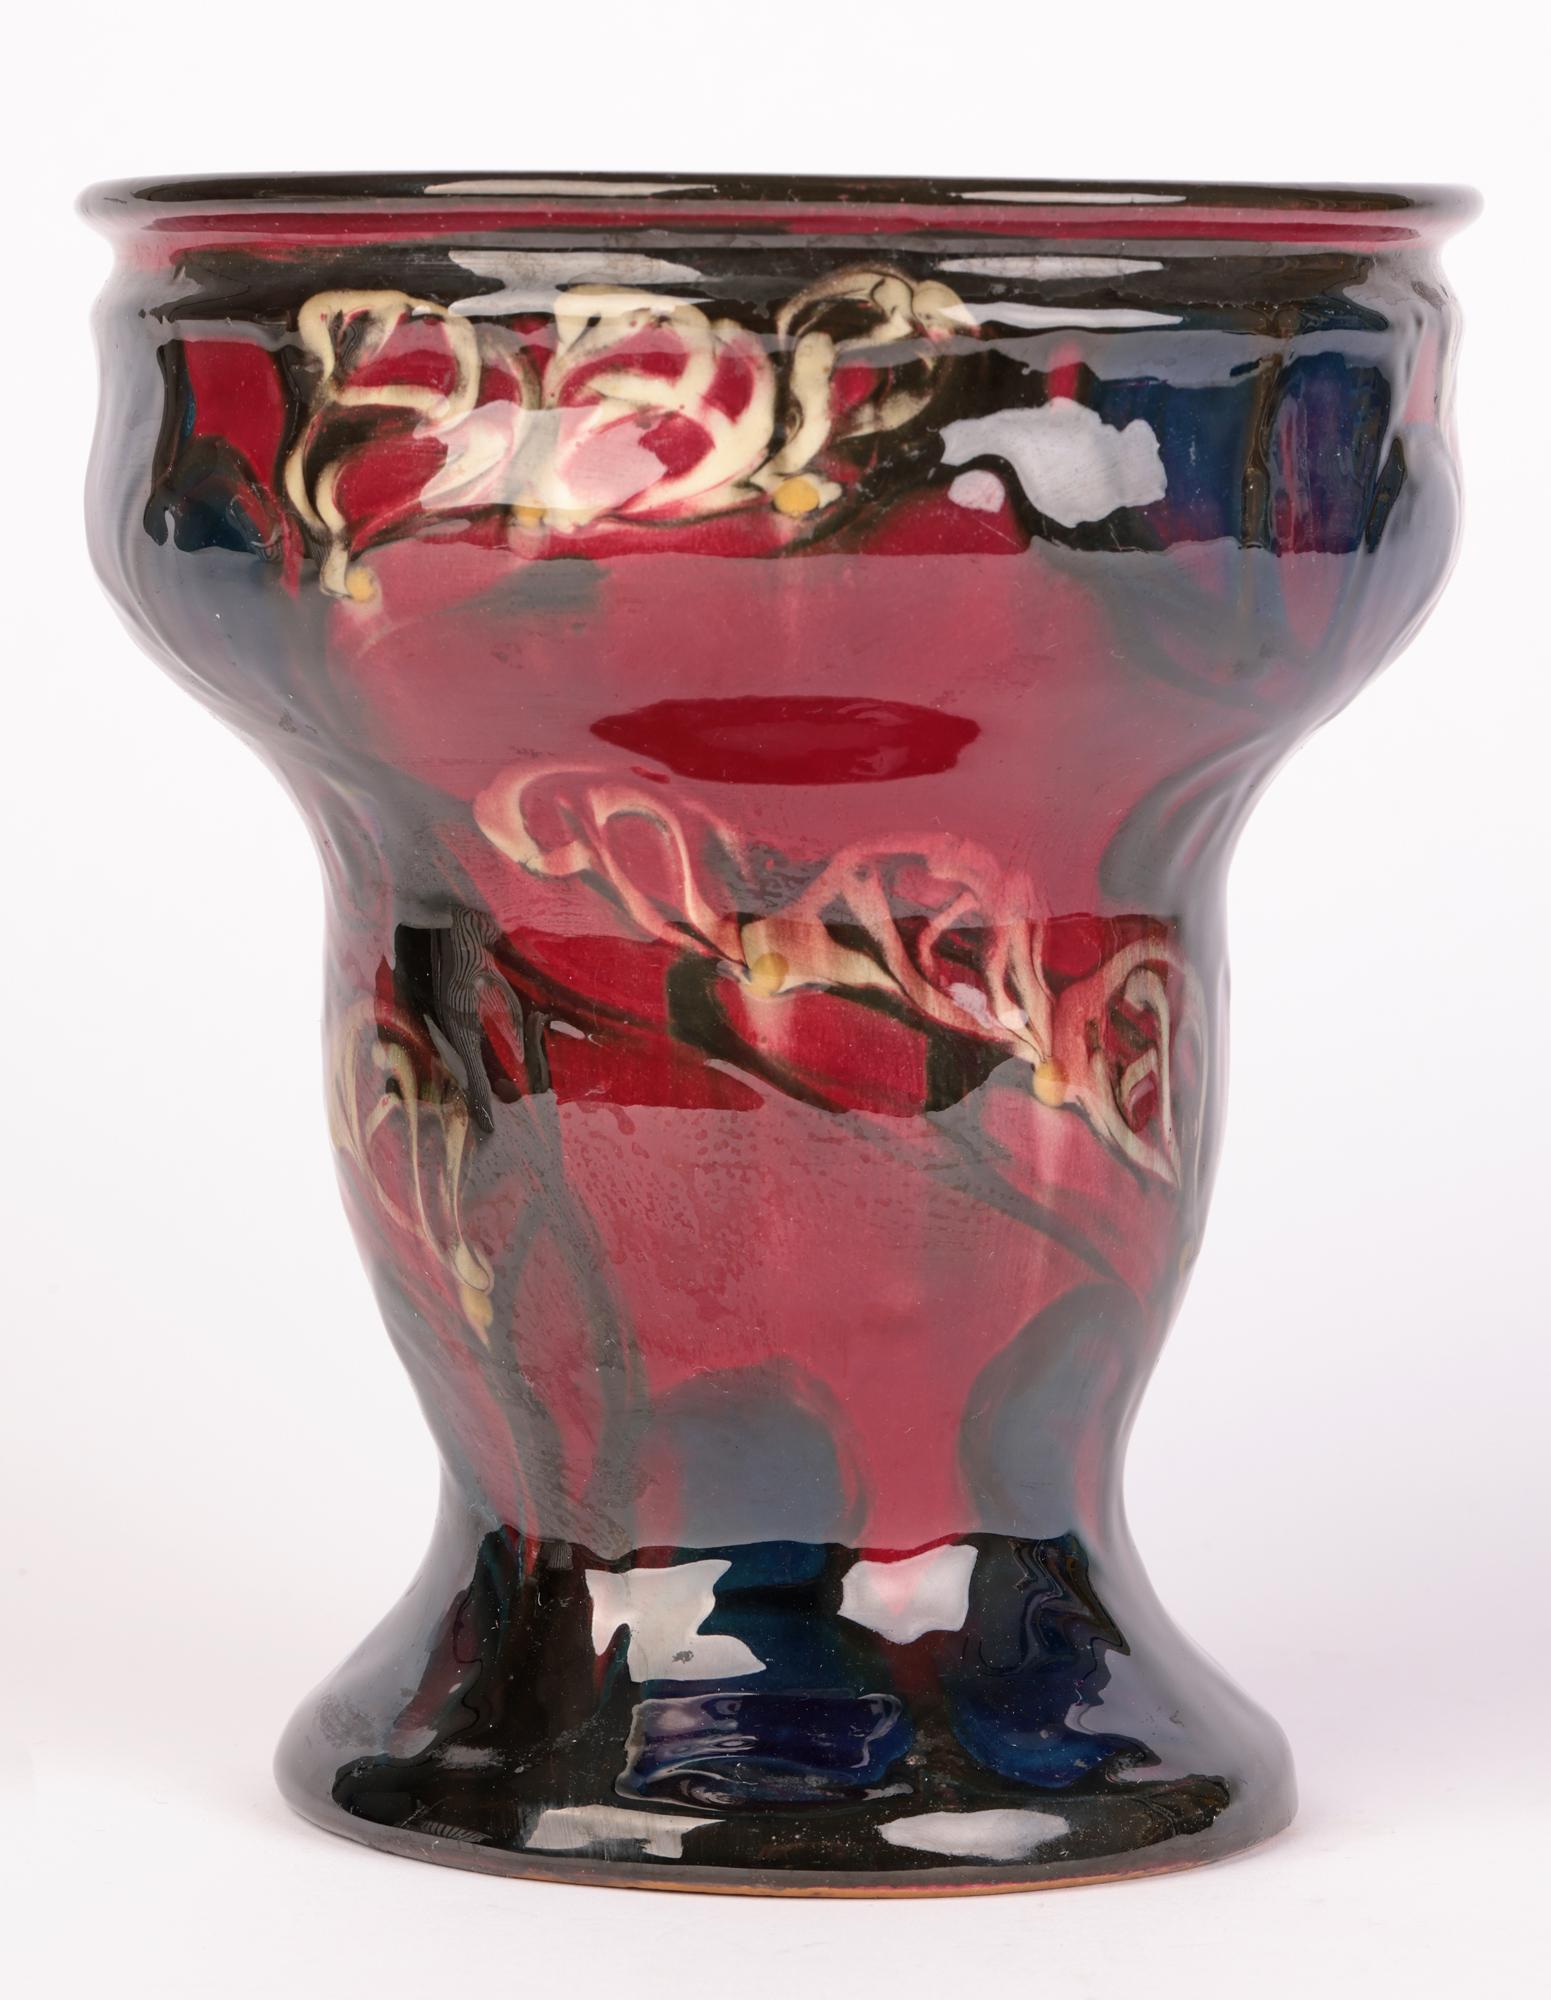 Eiler Londal Danico Skronvirke Art Pottery Abstract Vase For Sale 3